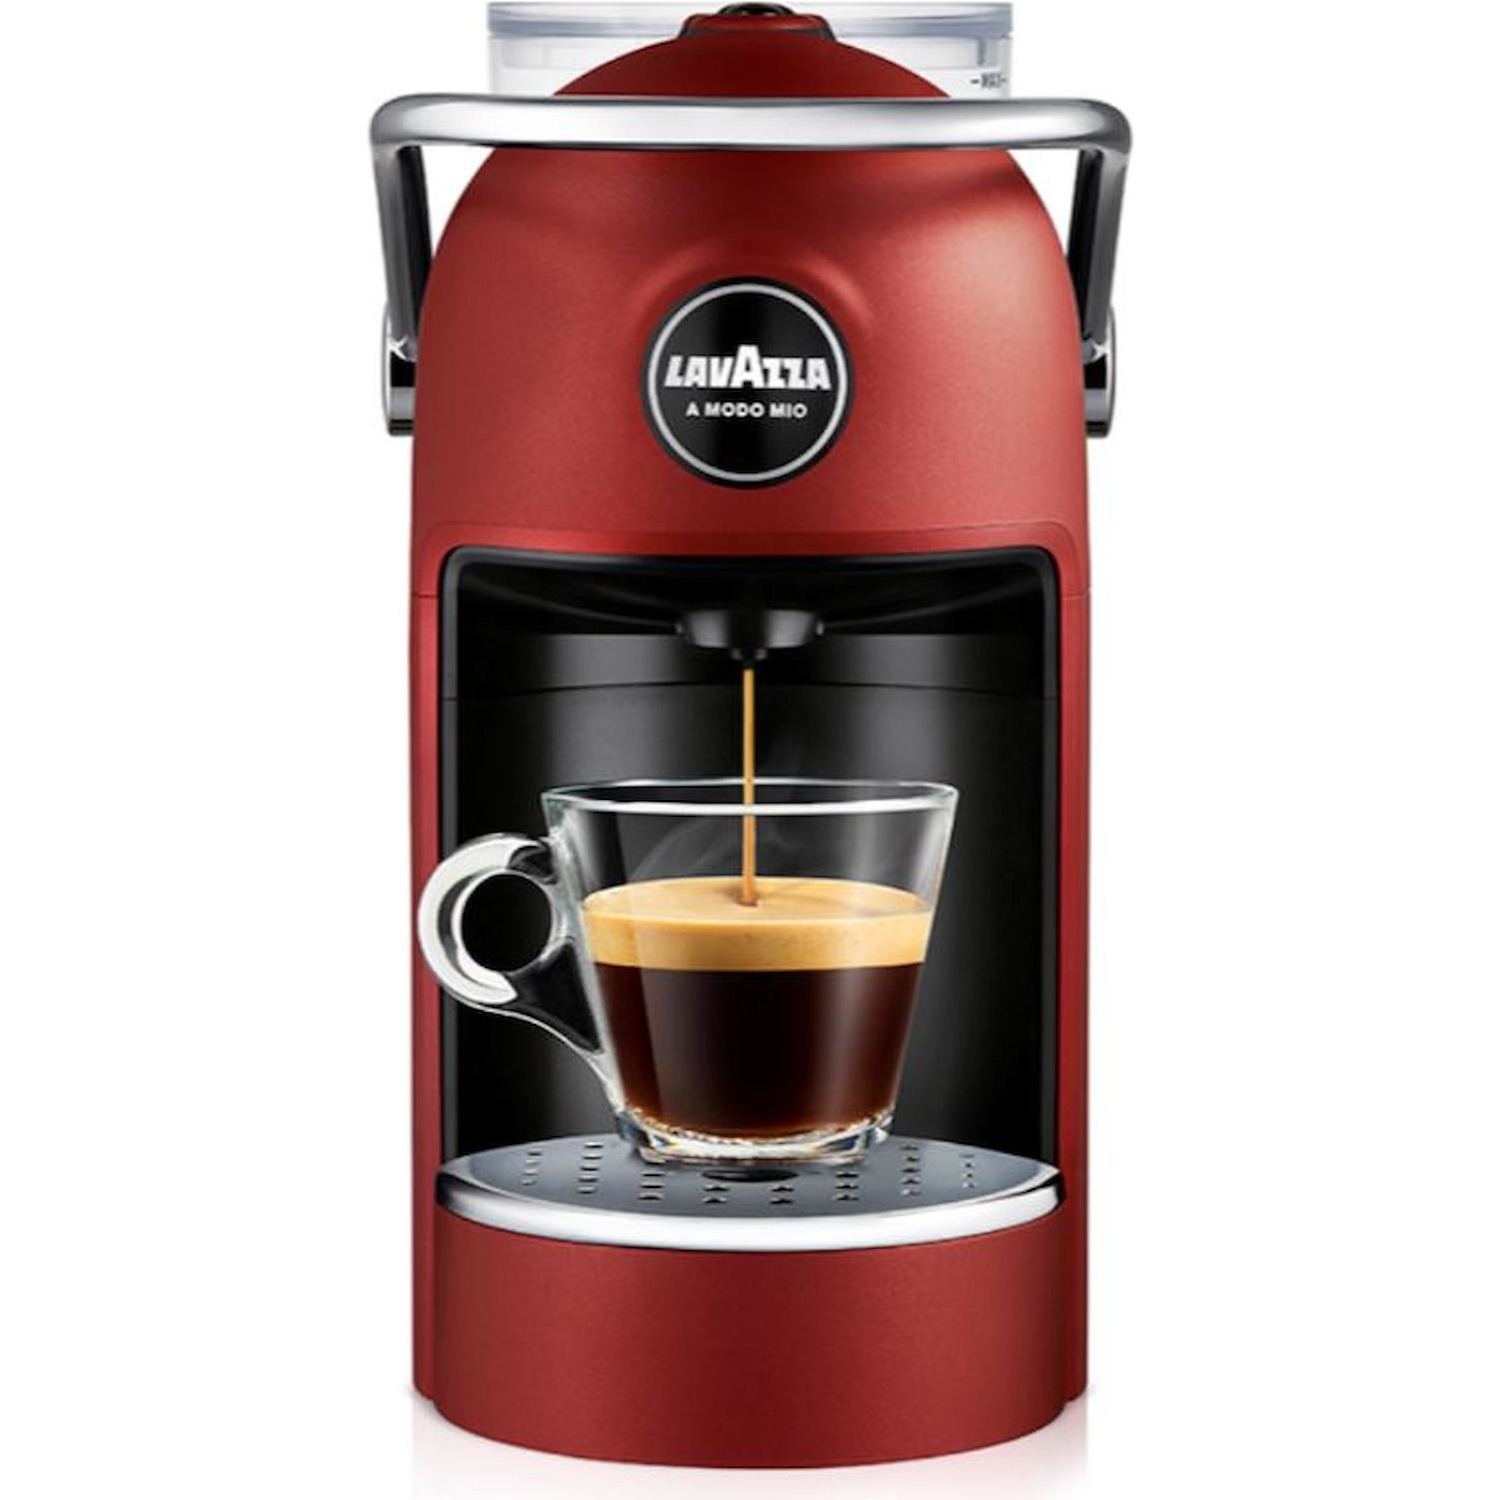 Immagine per Macchina caffè Espresso Lavazza Jolie Plus a      capsule red rossa da DIMOStore